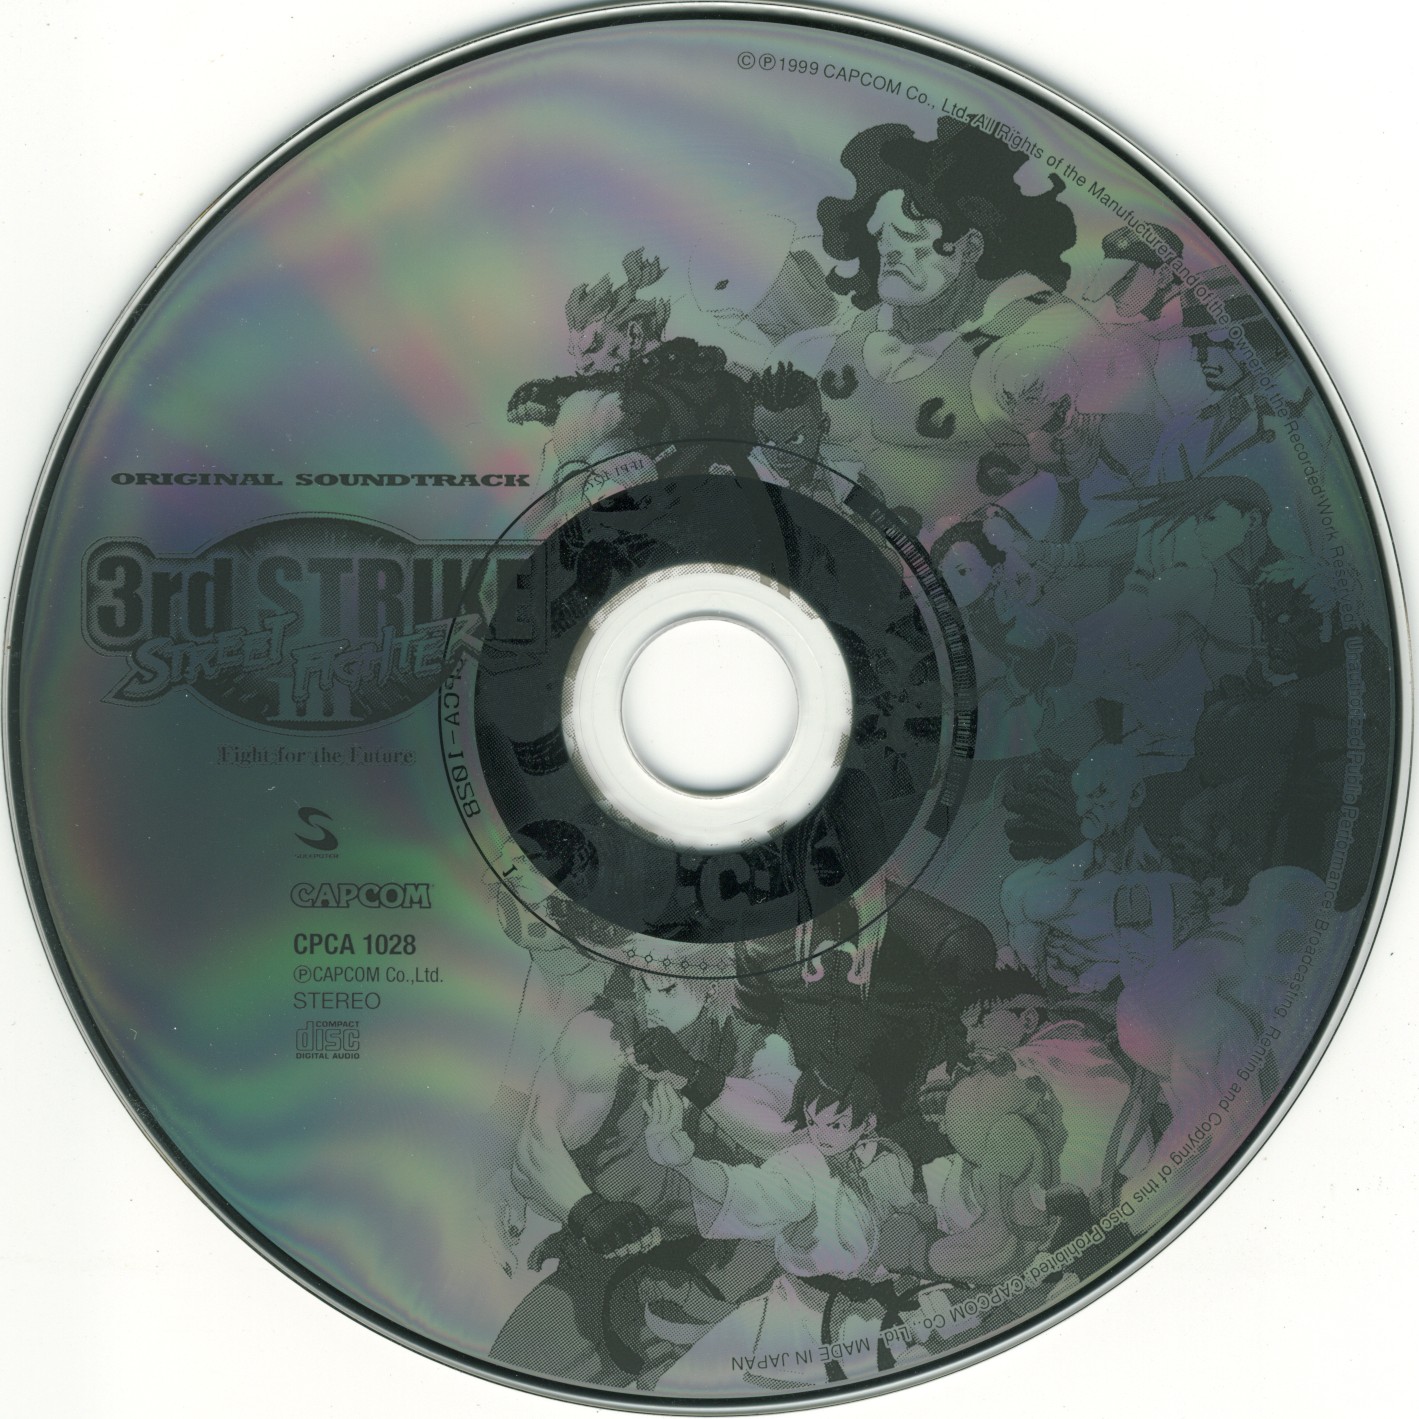 Disc 1.jpg